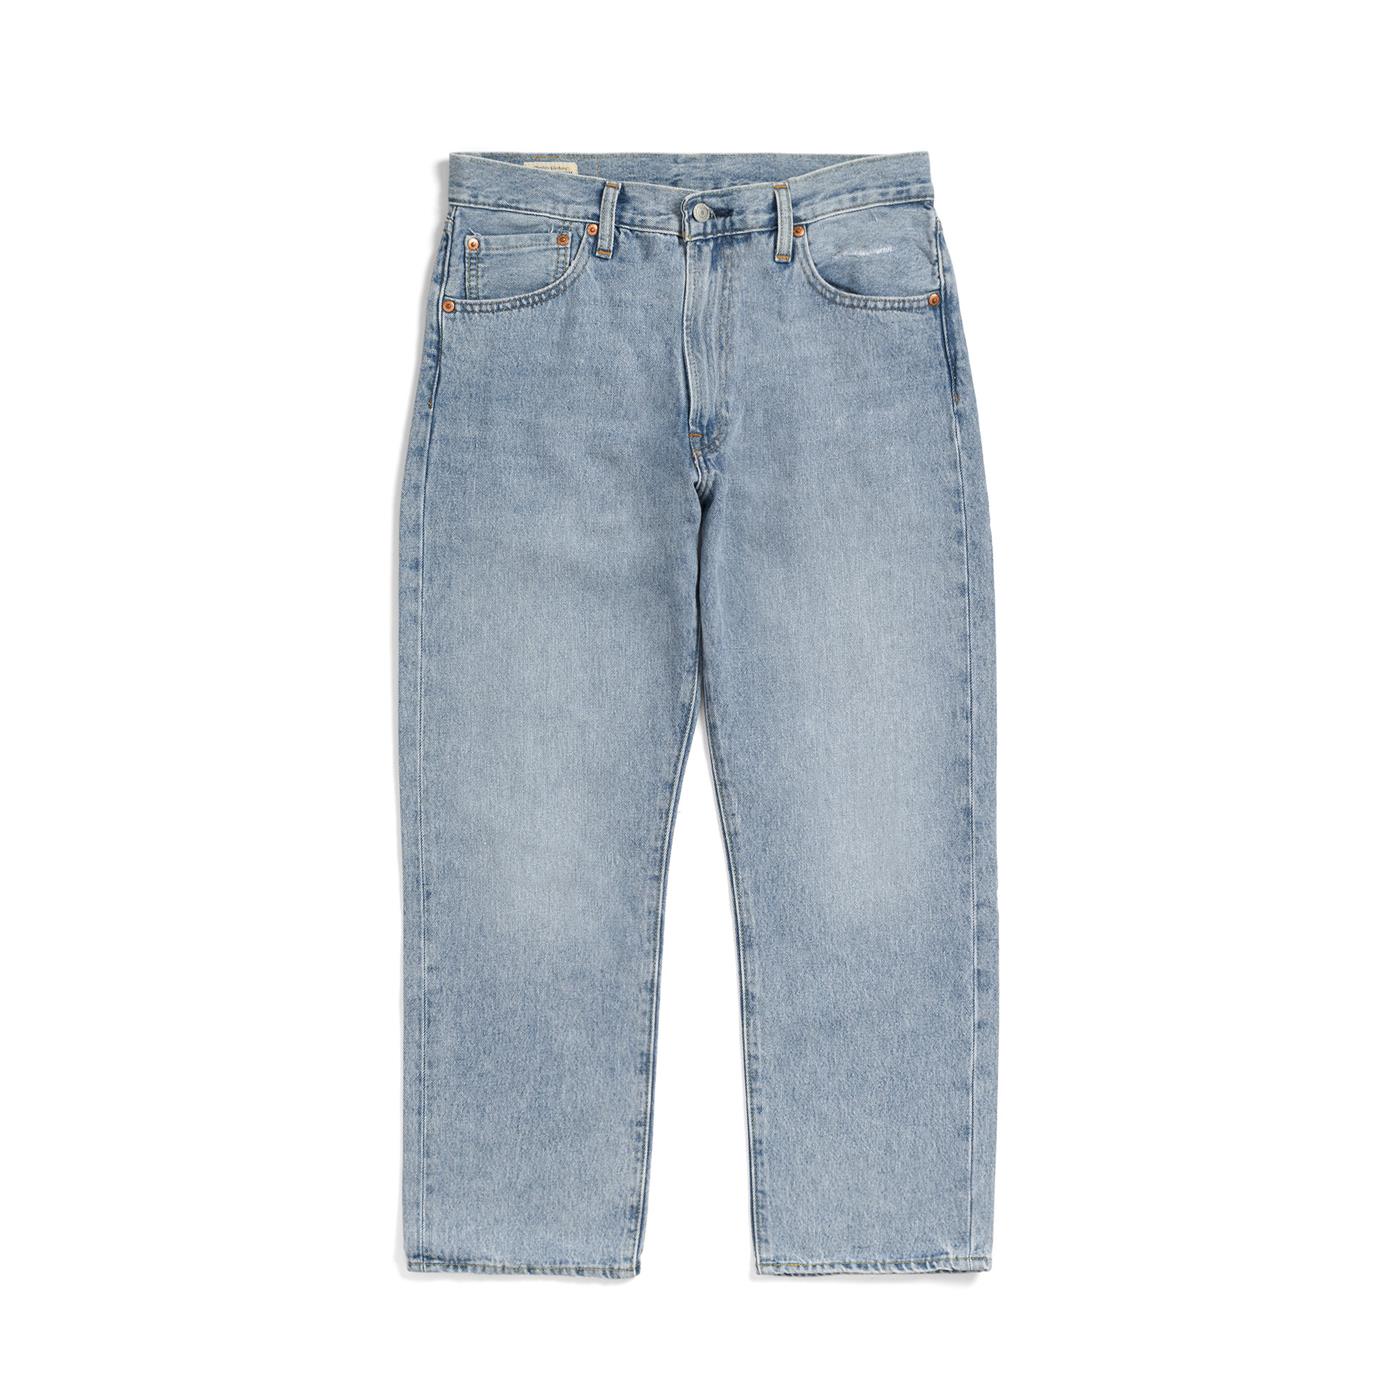 Pants Levis 551Z Authentic Straight Crop Jeans Blue for Man | A0927-0005 |  